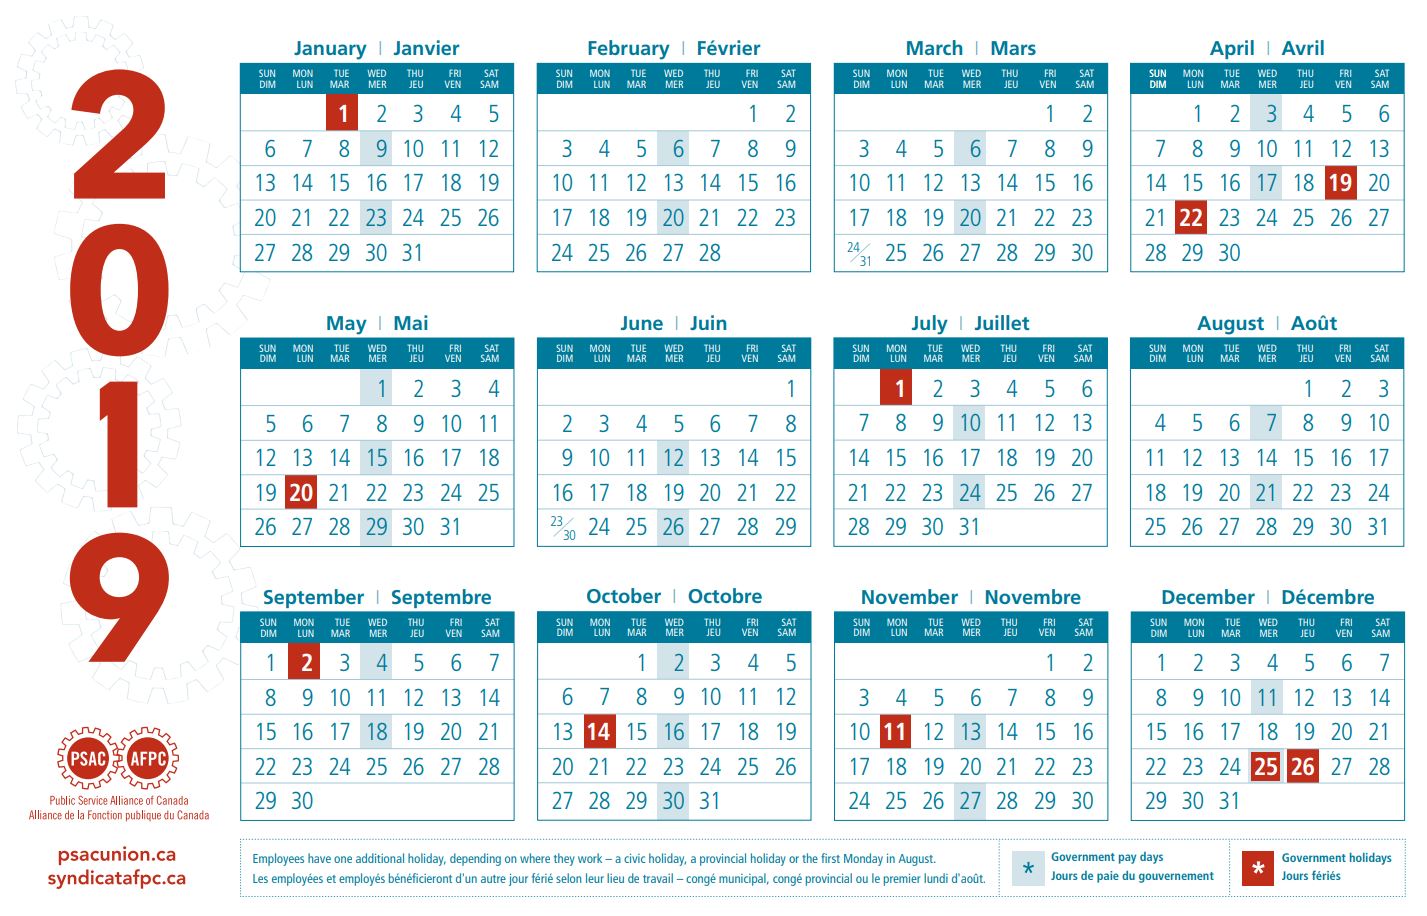 psac-calendars-public-service-alliance-of-canada